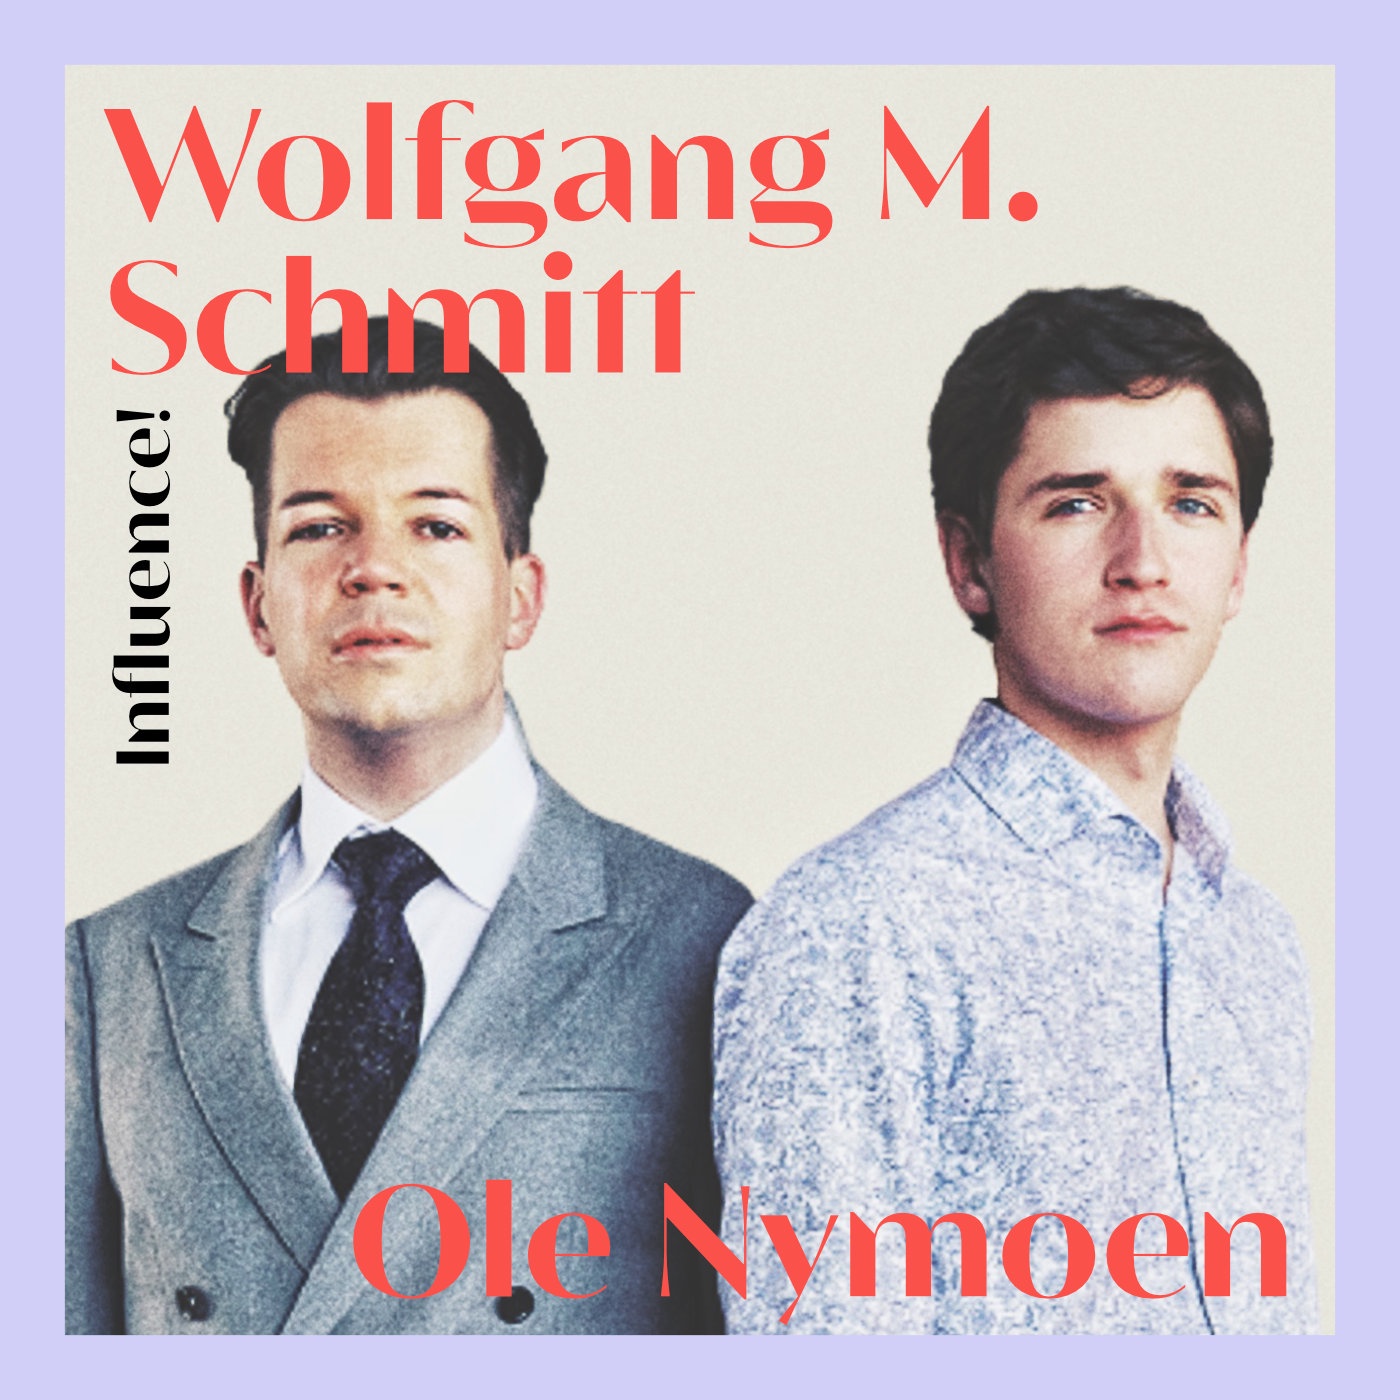 #77 | Wolfgang M. Schmitt & Ole Nymoen, welche Ideologie verkörpern Influencer?